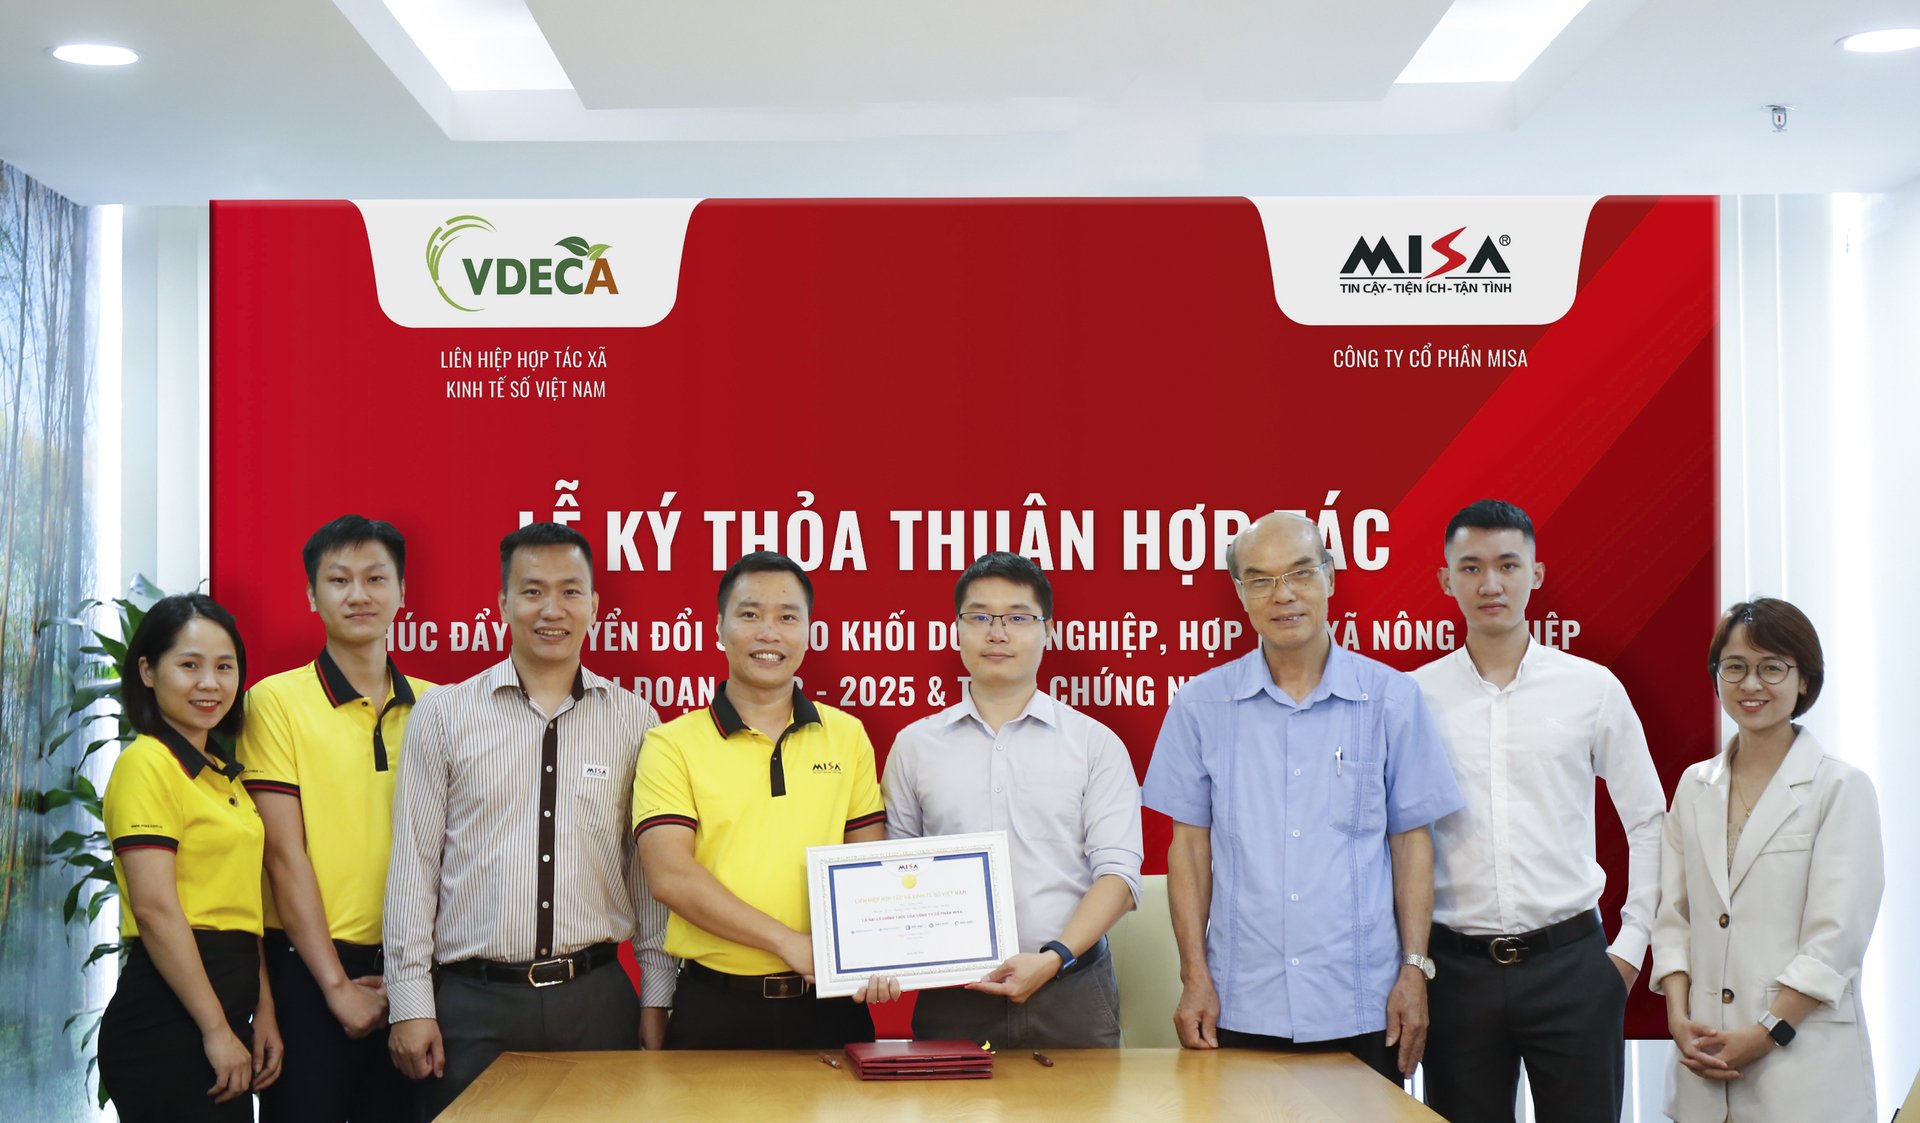 Công ty Cổ phần MISA và Liên hiệp HTX Kinh tế số Việt Nam ký kết hợp tác thúc đẩy chuyển đổi số trong lĩnh vực nông nghiệp.